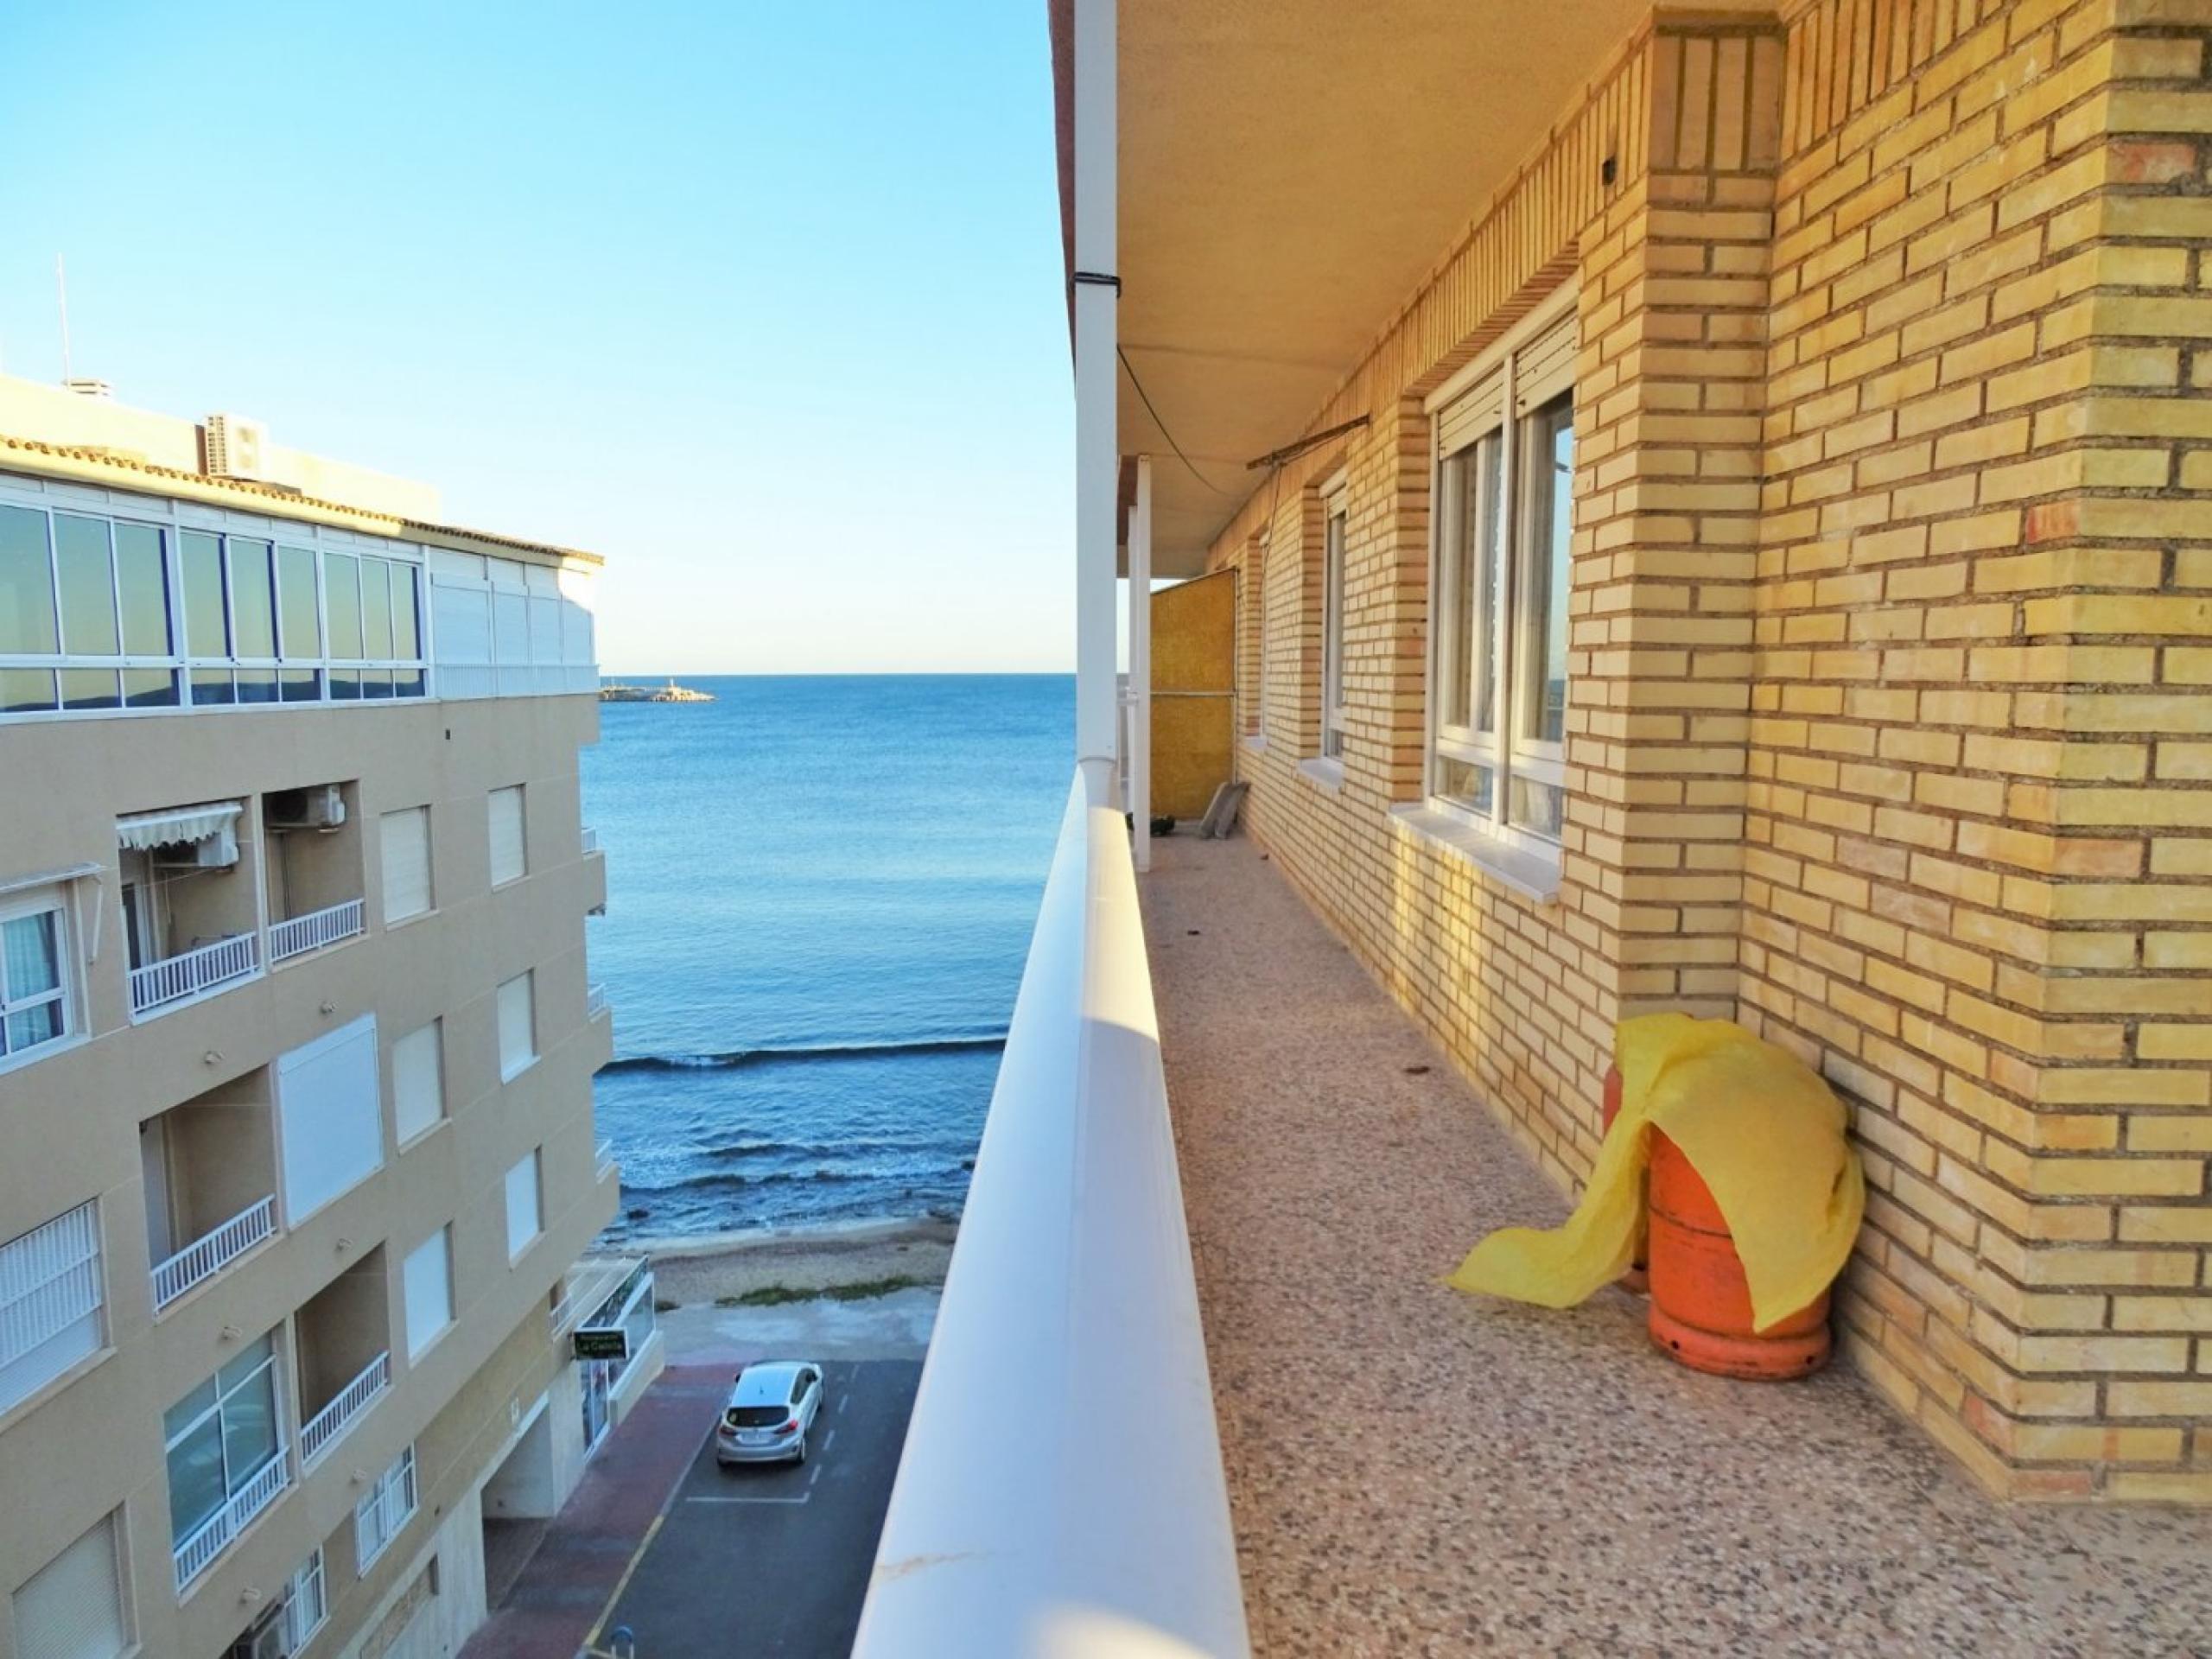 Penthouse première ligne avec terrasse 20 mètres 3 chambres vue mer